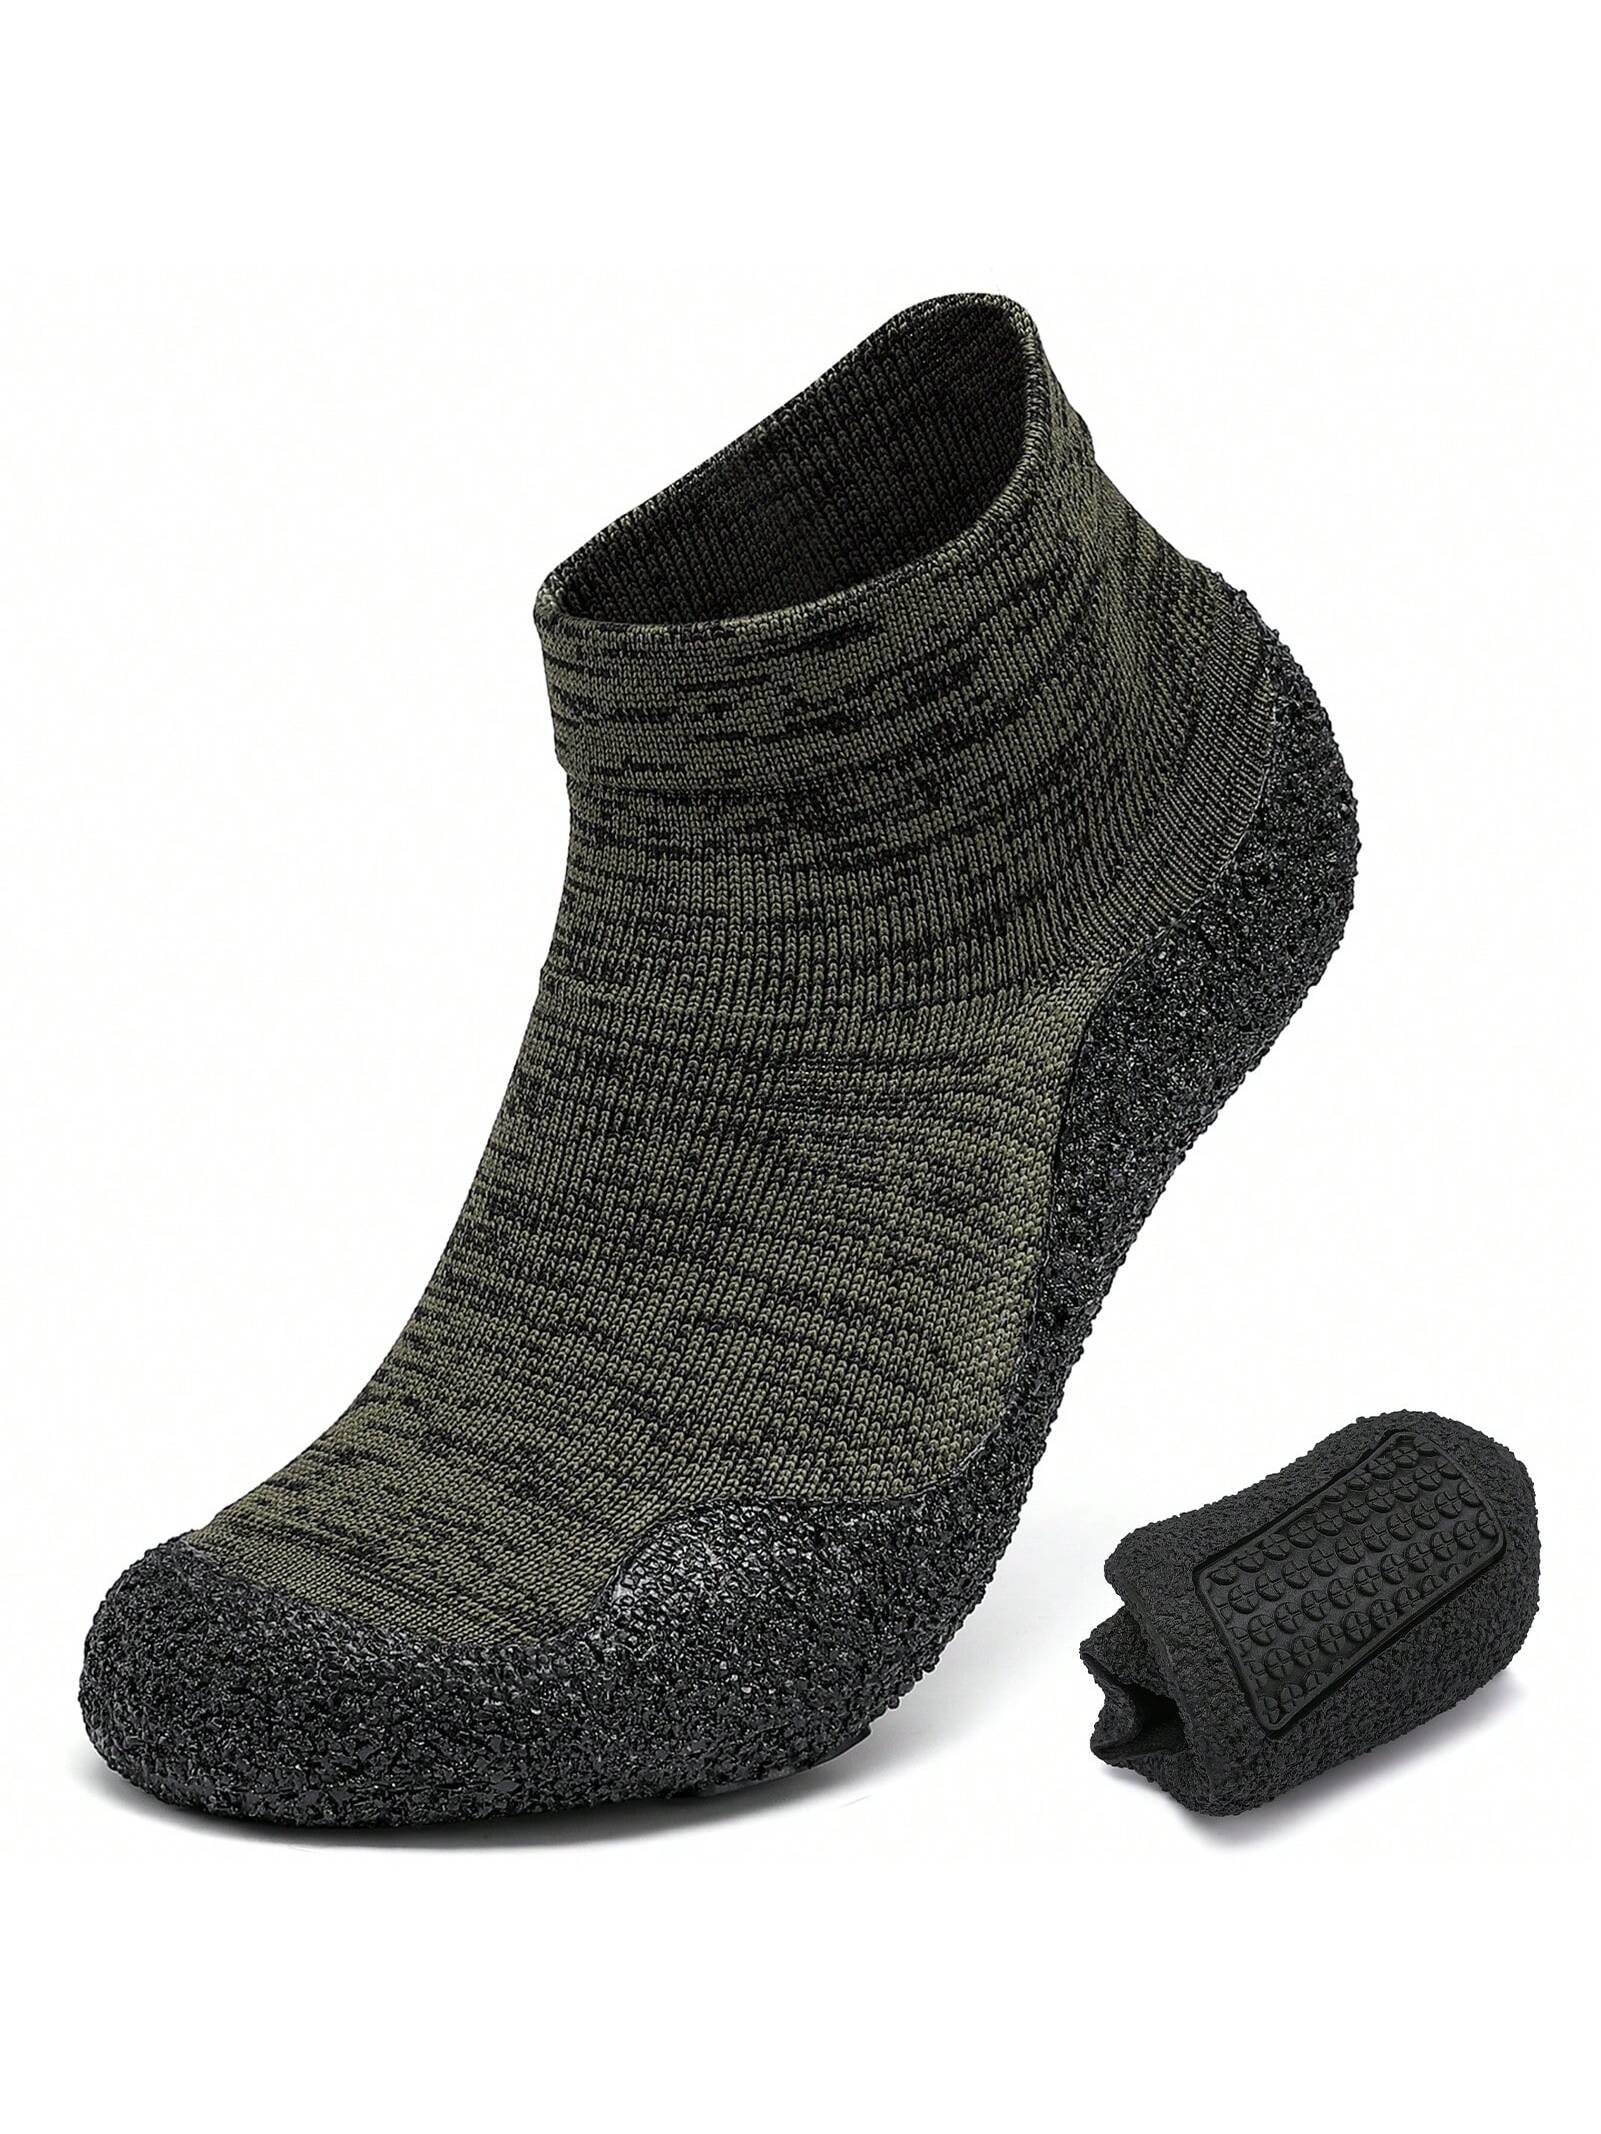 Минималистские туфли-носки для мужчин и женщин | Легкая обувь для ходьбы с нулевым падением | Многоцелевой, темно-зеленый